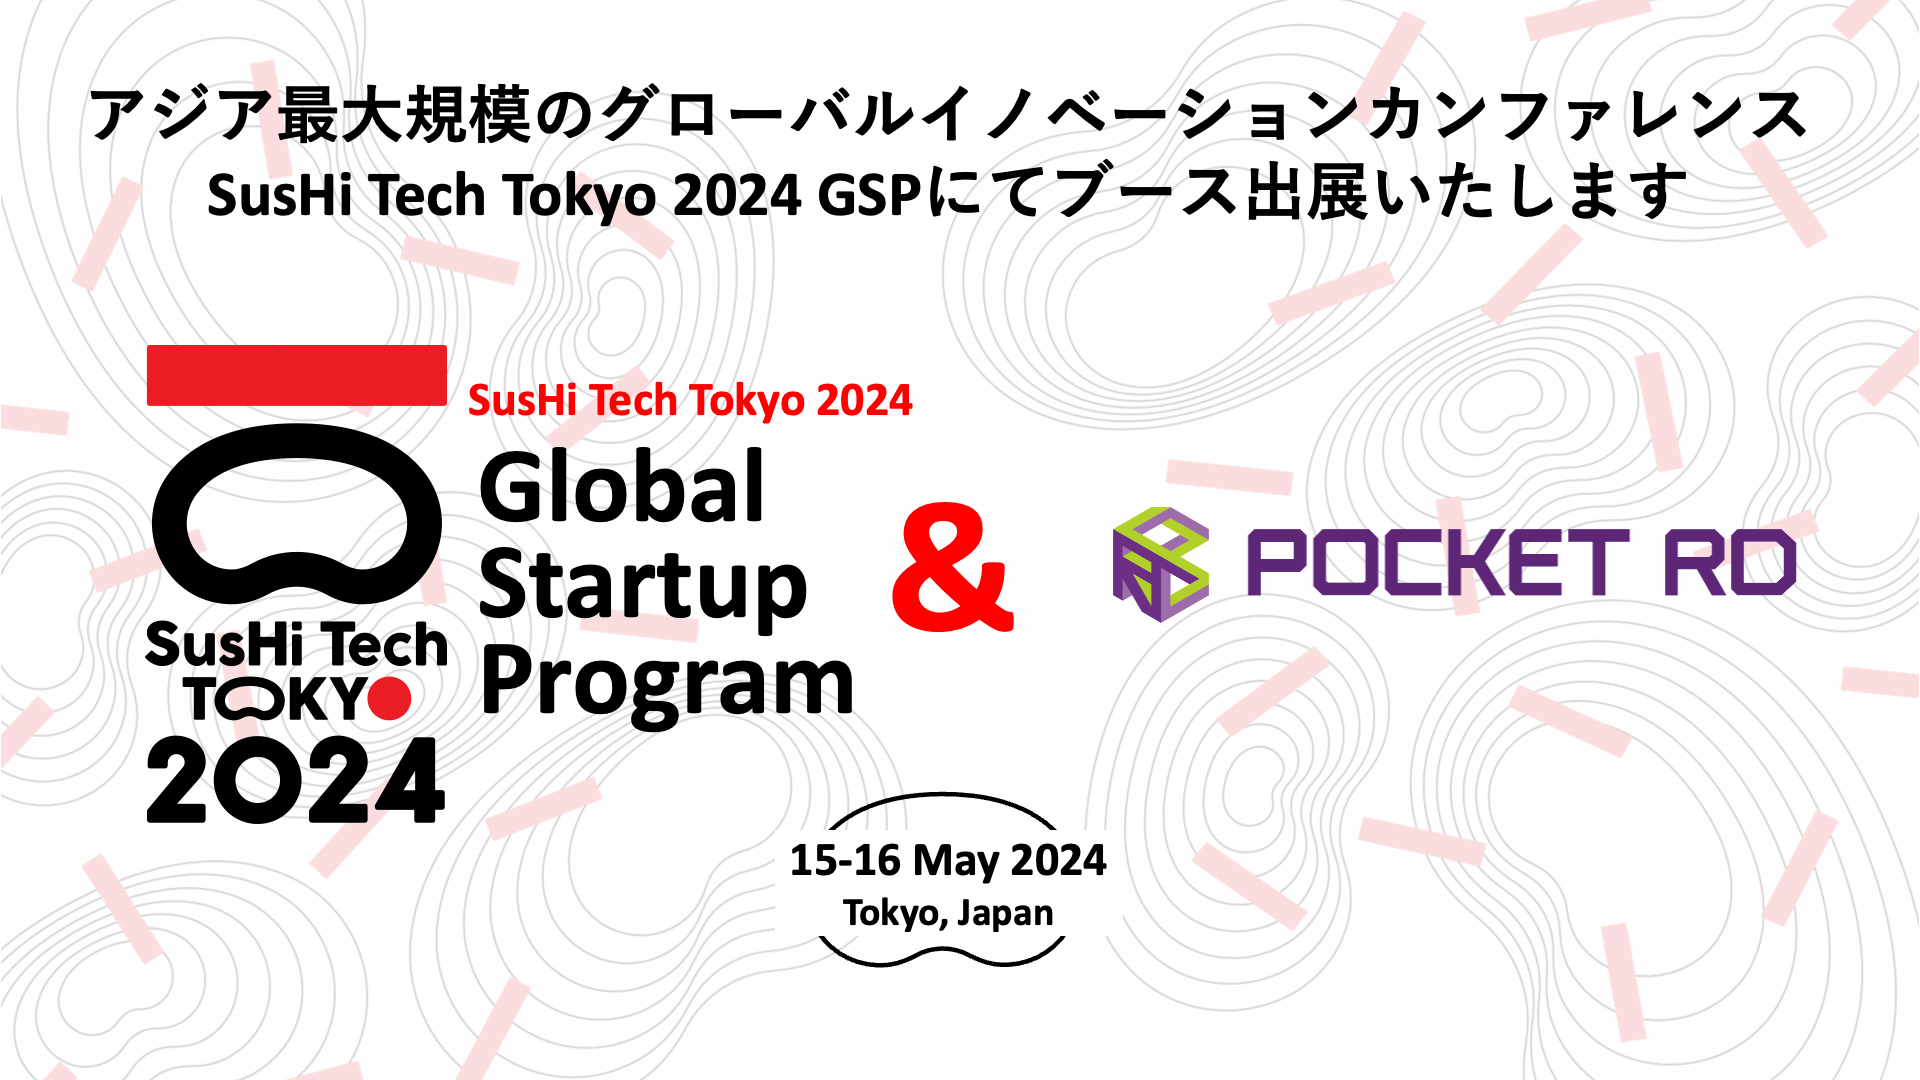 株式会社Pocket RDがSusHi Tech Tokyo 2024 Global Startup Programにブース出展